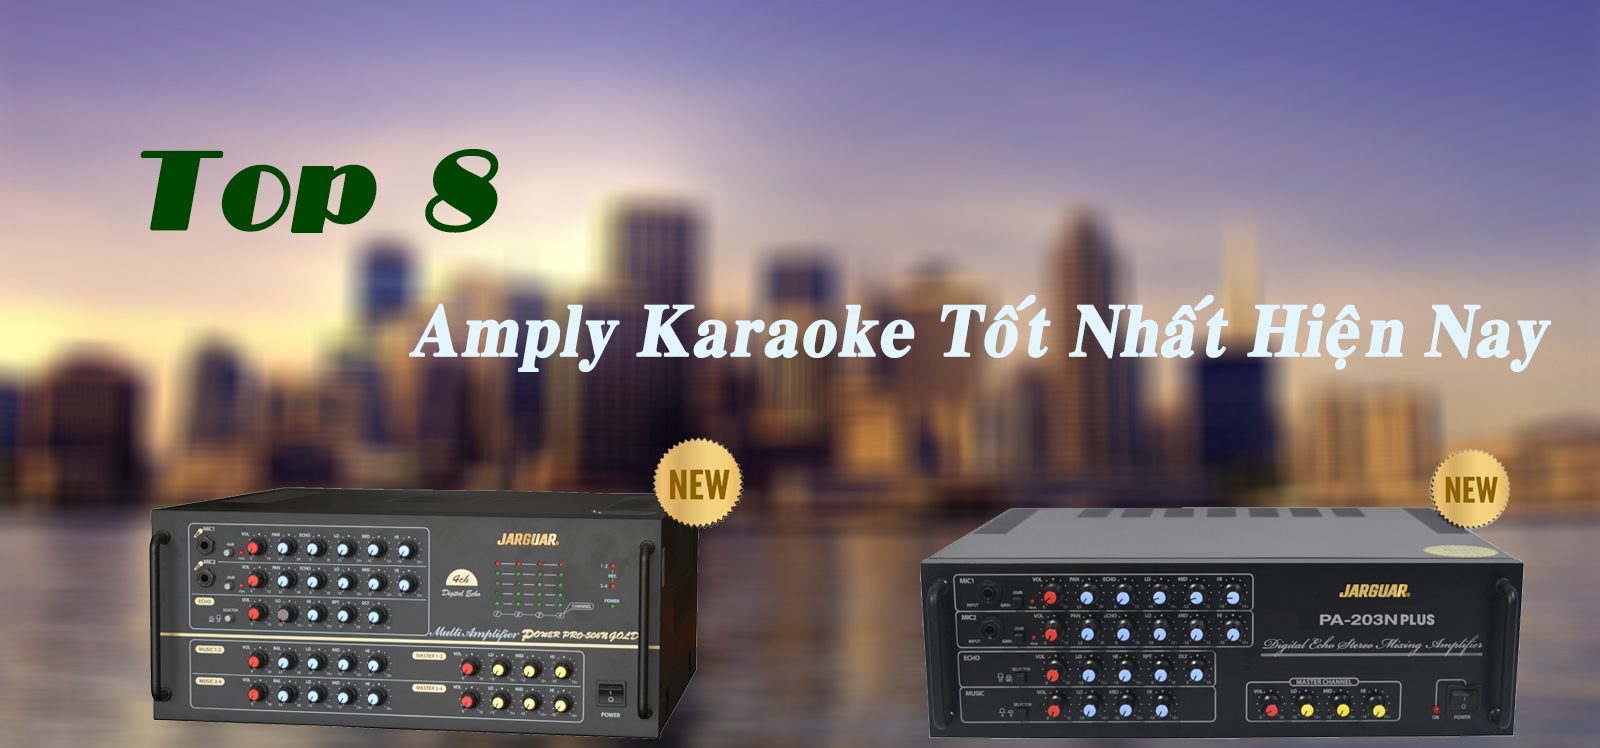 Amply karaoke chính hãng